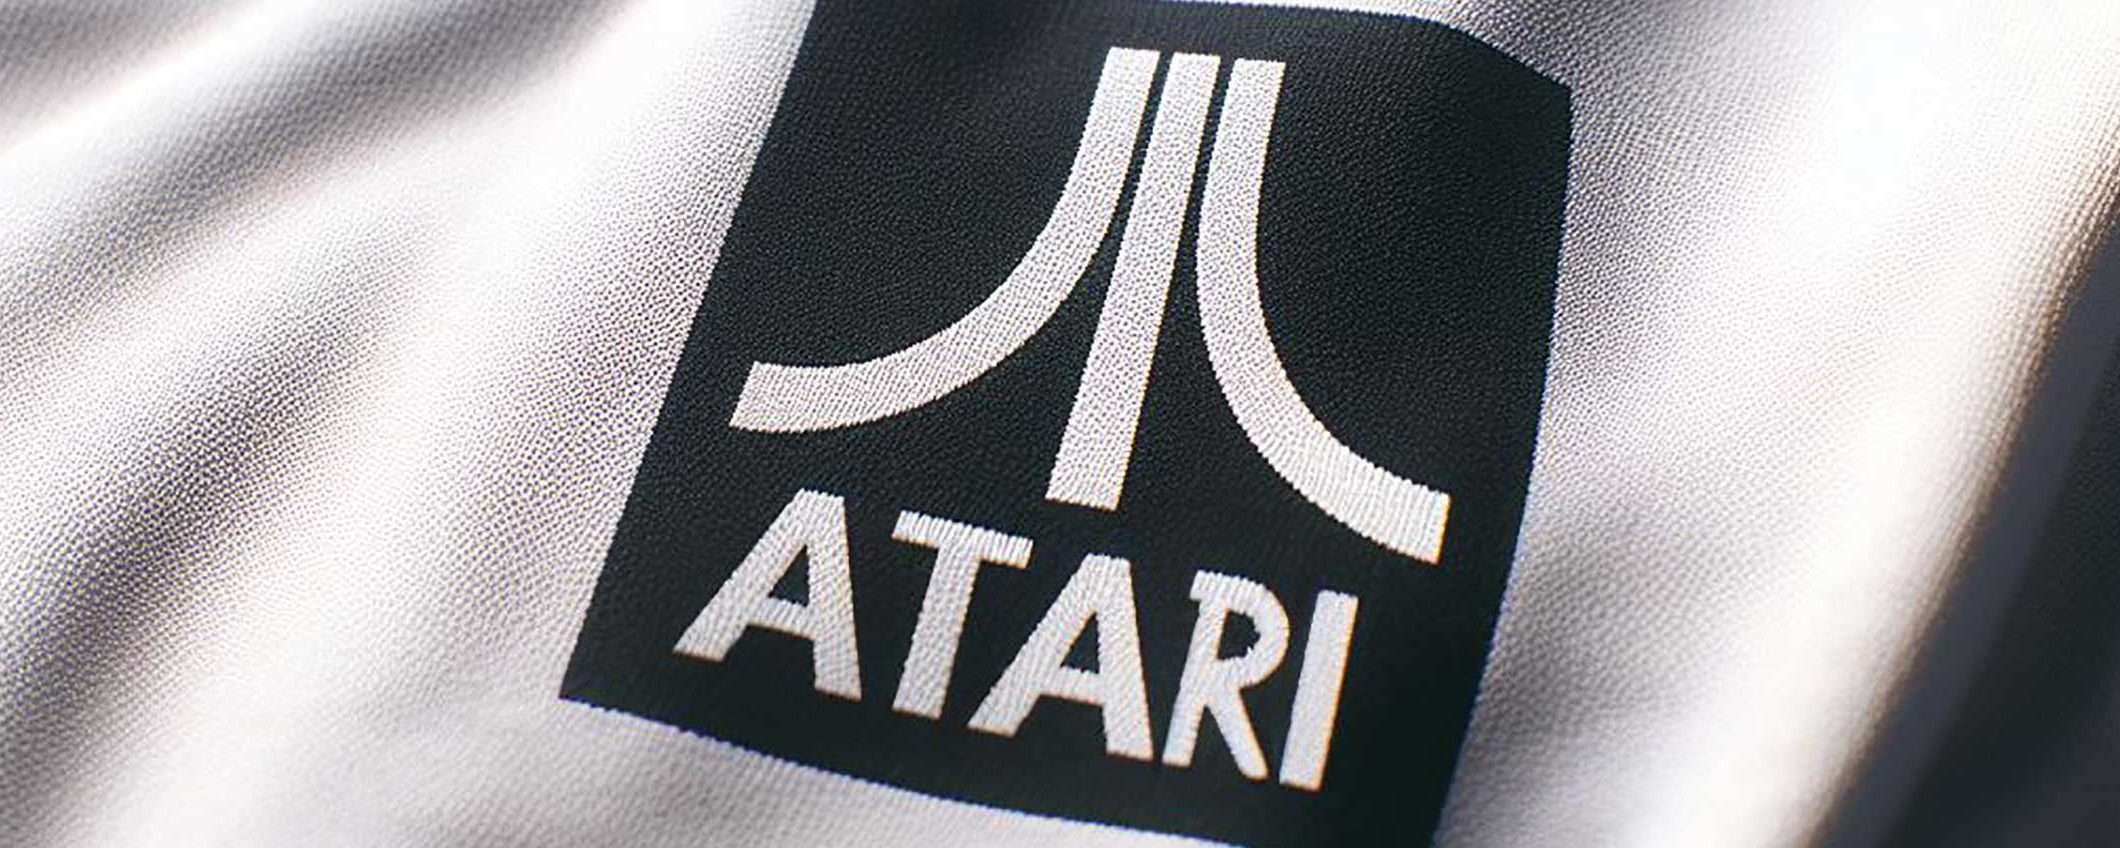 Digital Eclipse è la nuova acquisizione di Atari